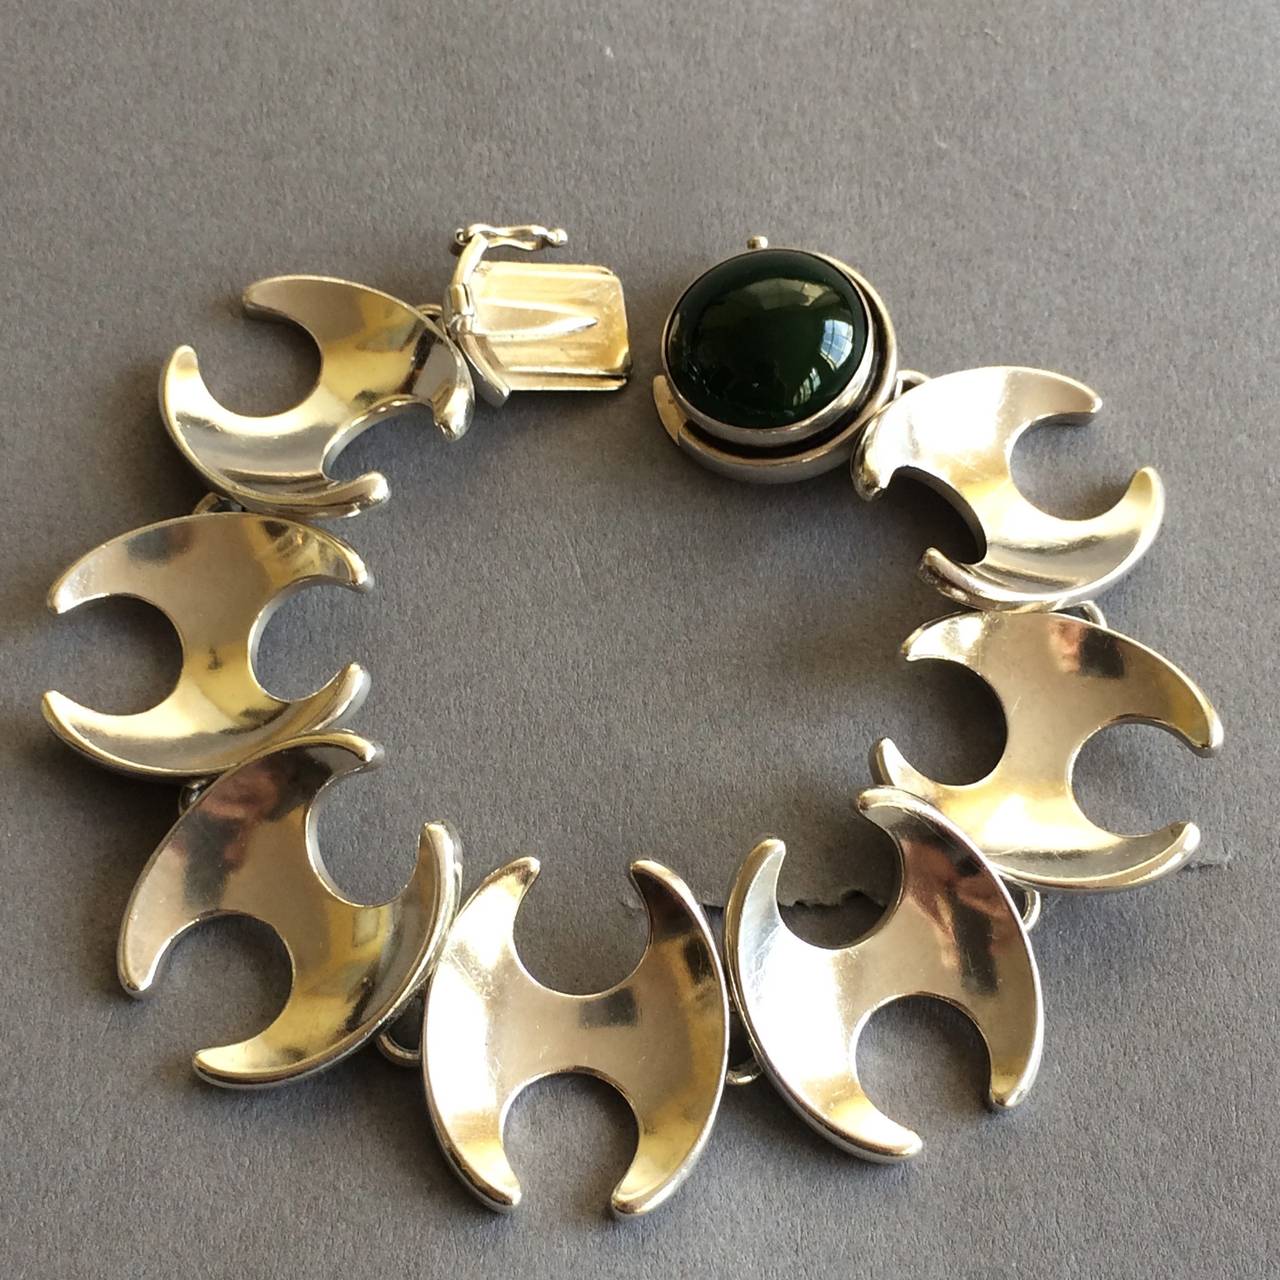 George Jensen bracelet with dark Jadeite Cabochon, no. 130 by Henning Koppel.

7.5